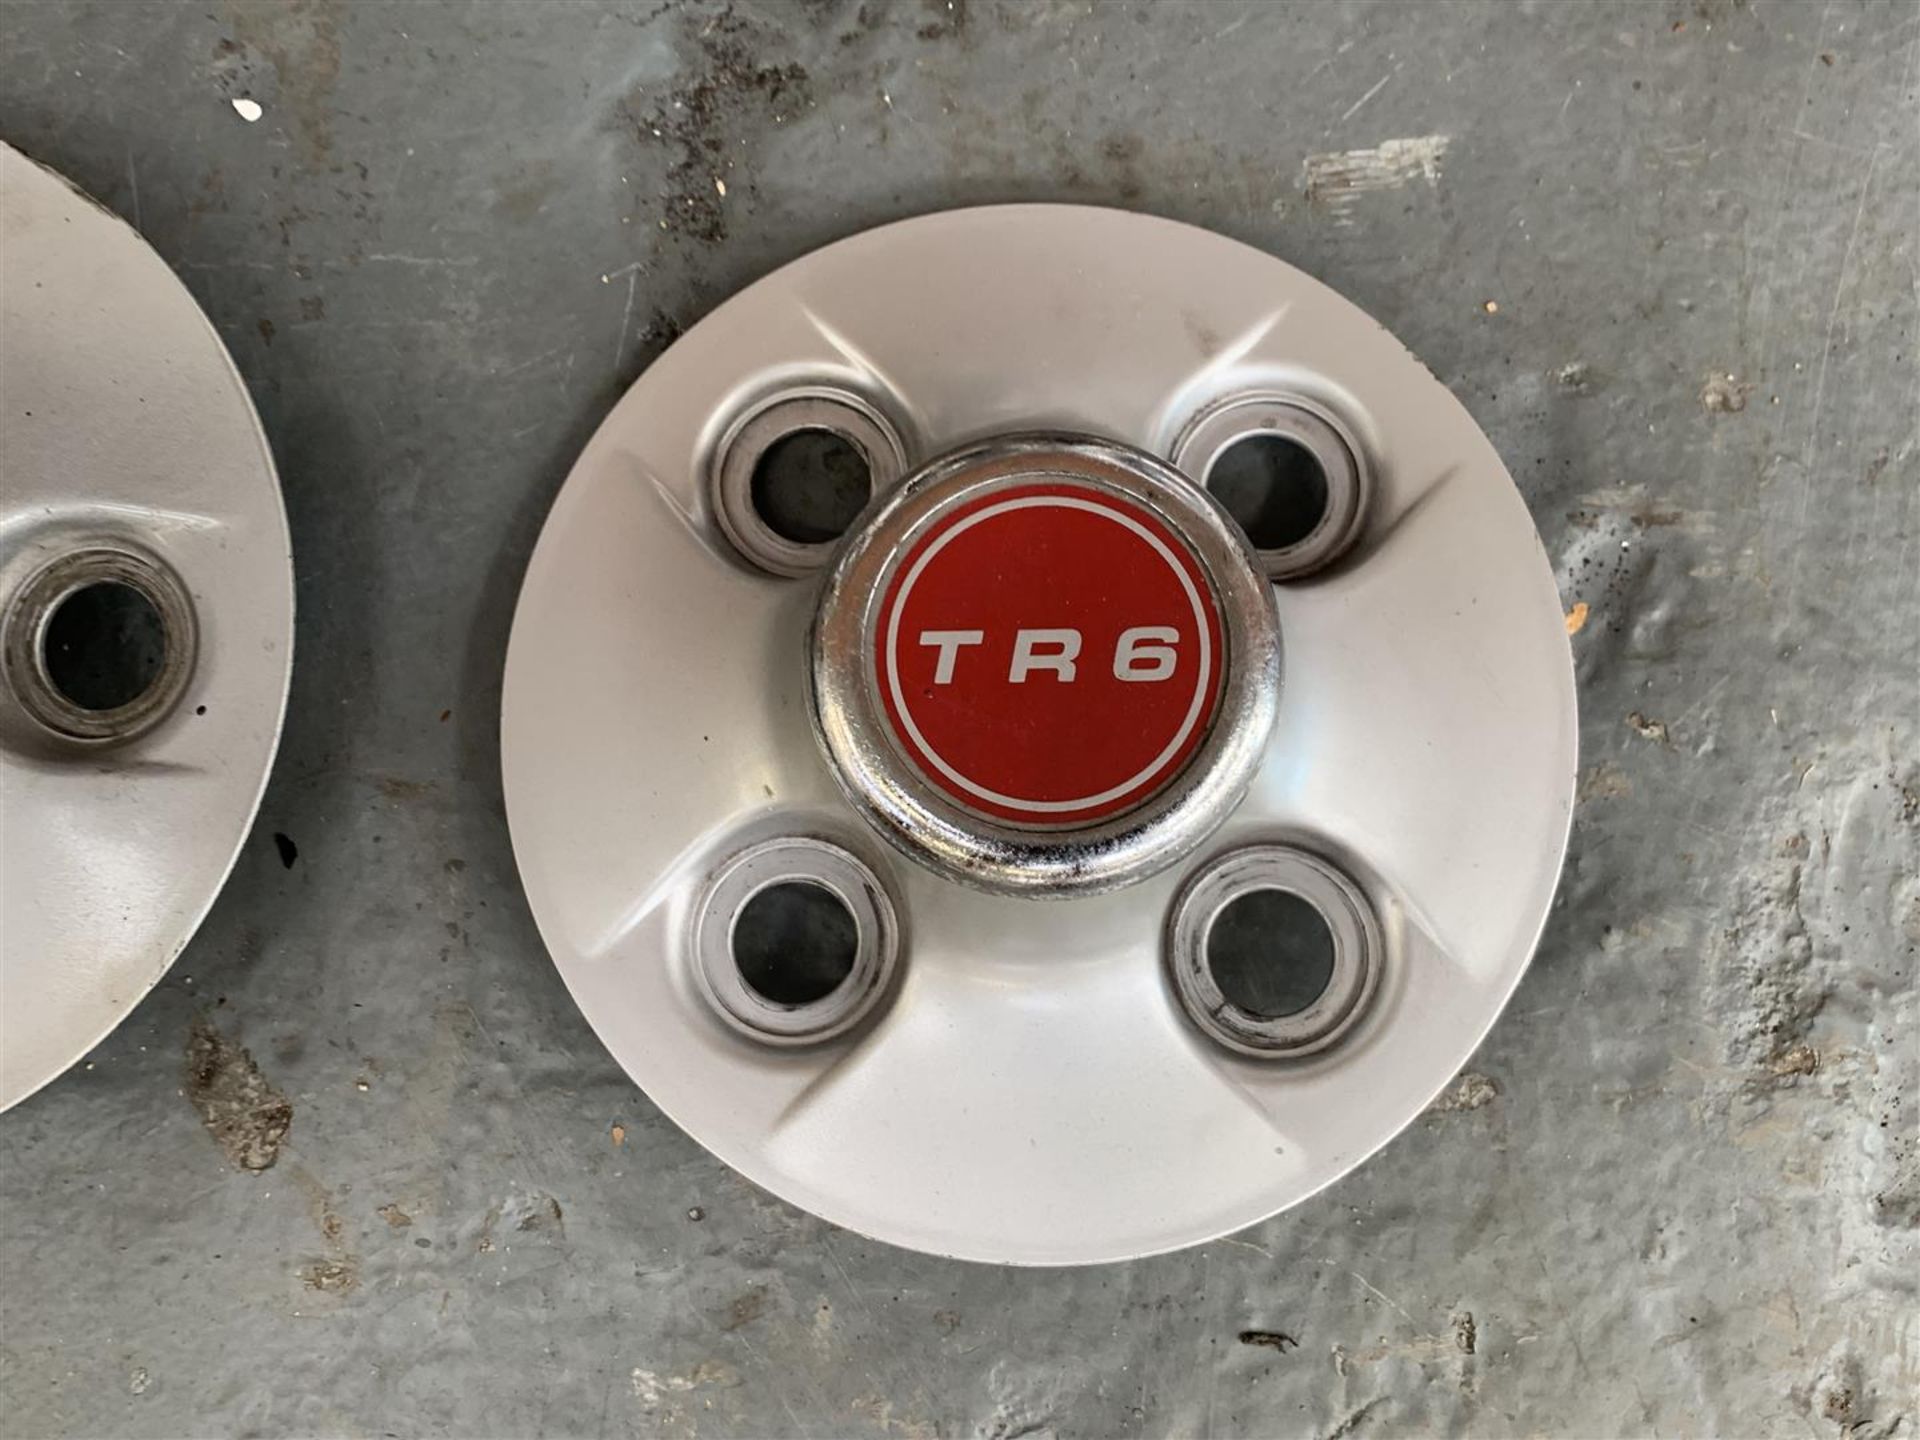 Triumph TR6 Parts - Image 3 of 6